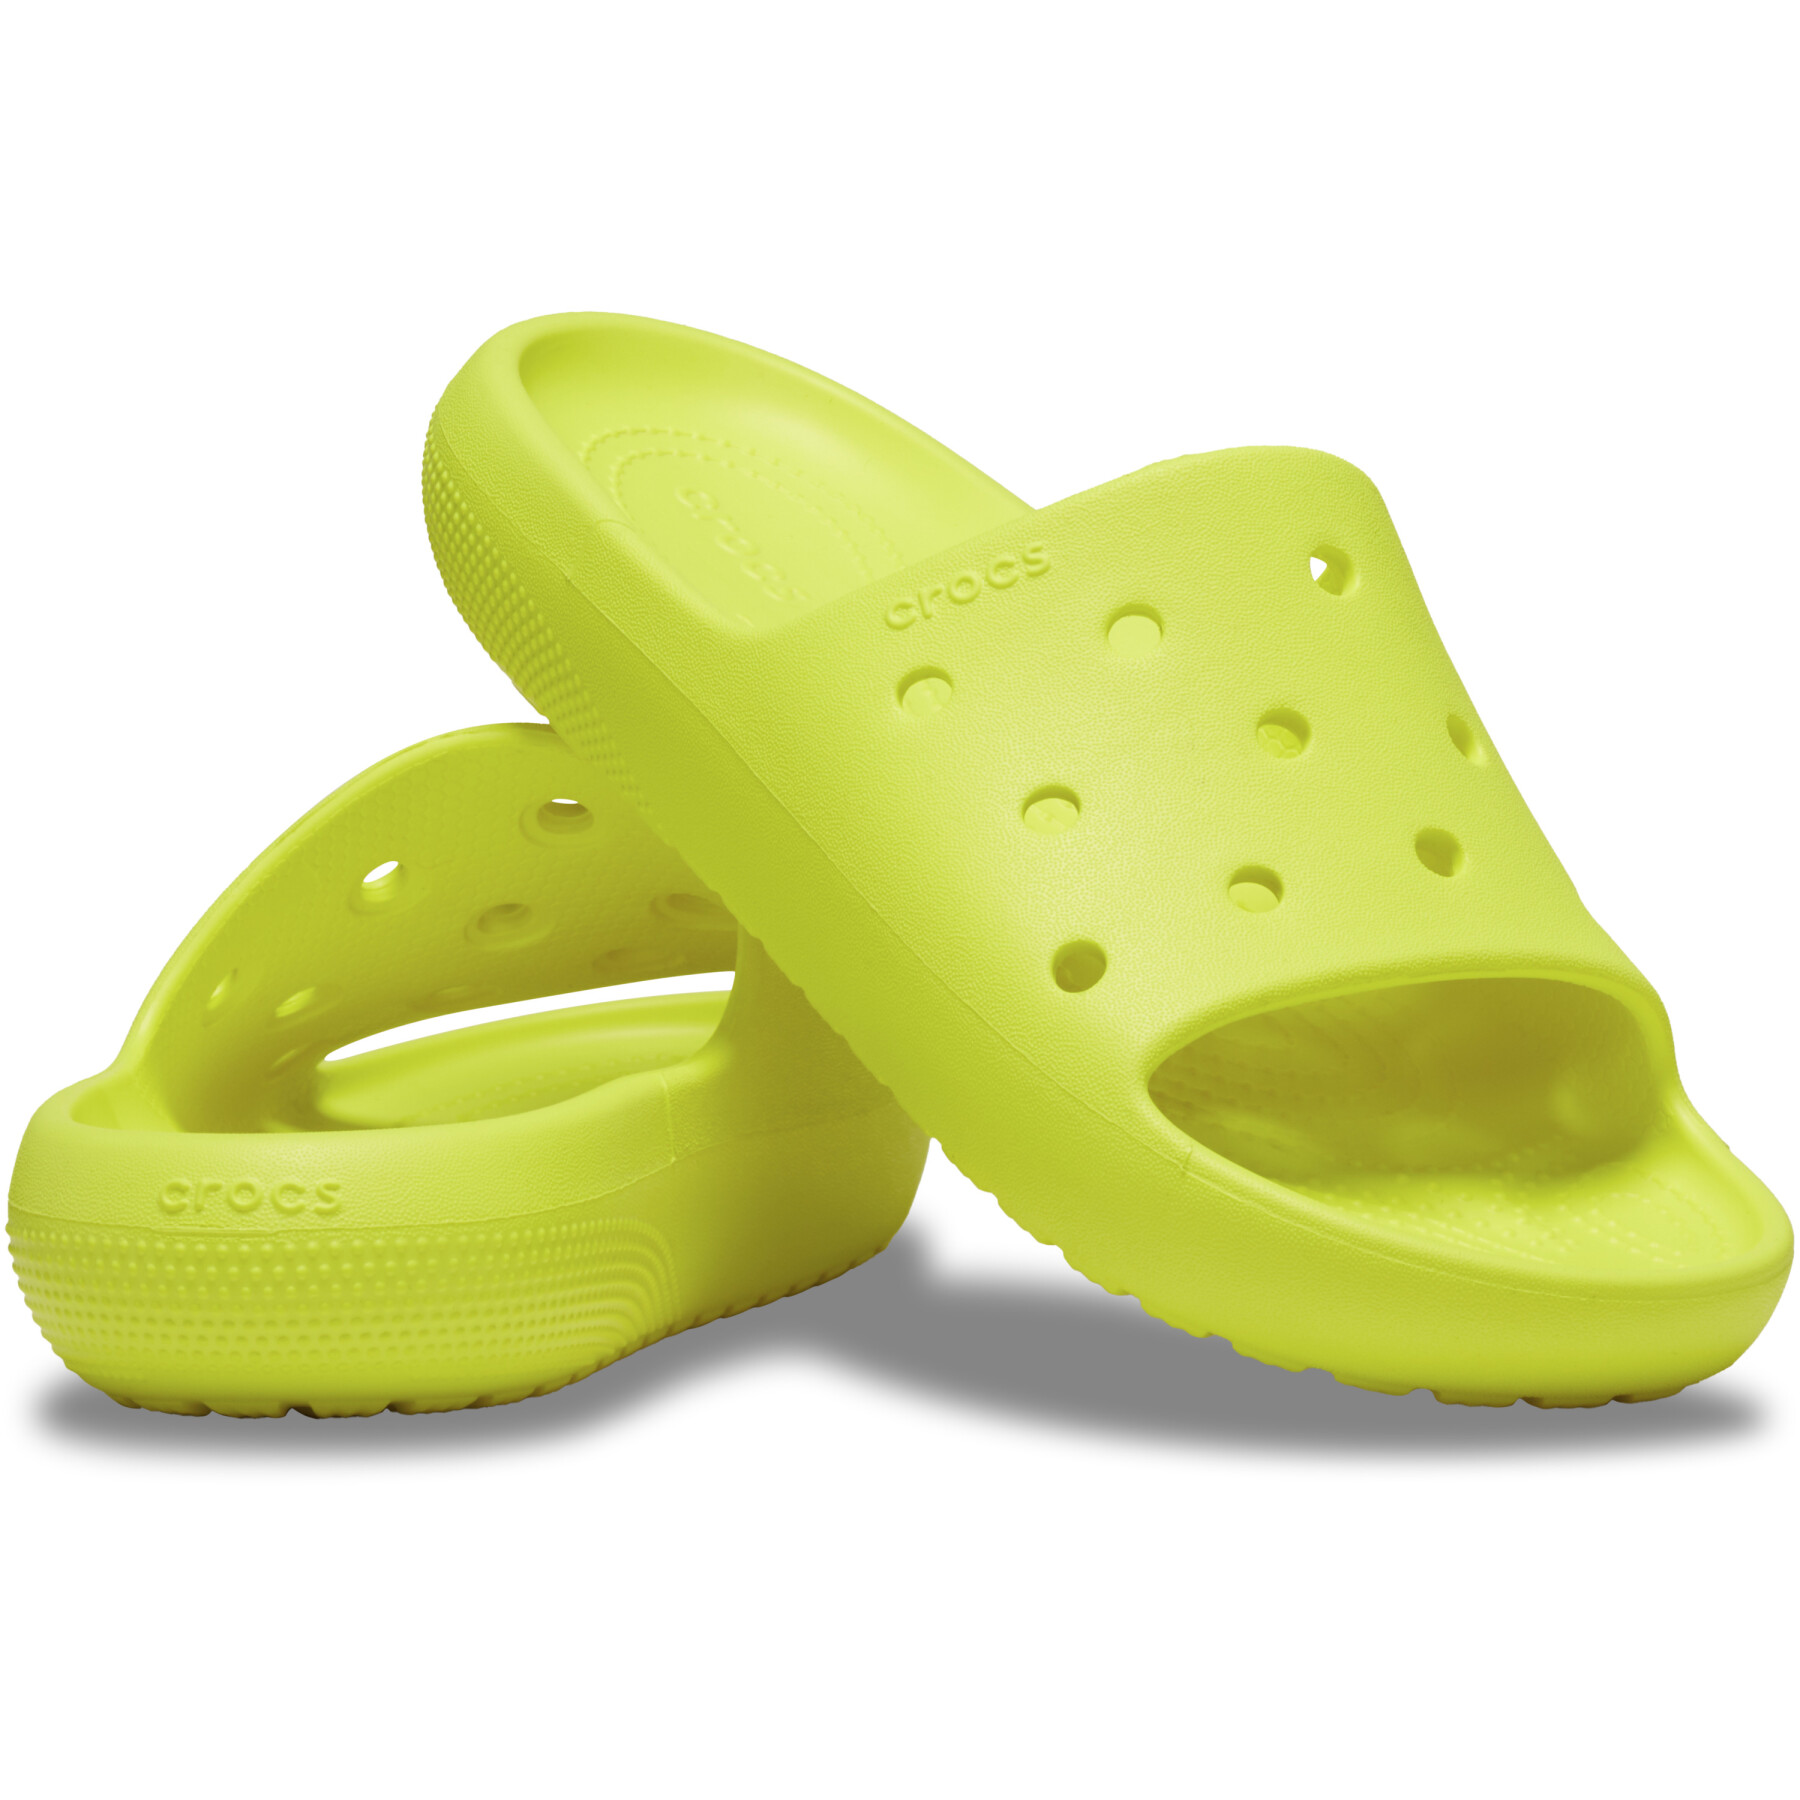 Ciabatte Crocs Classic Slide V2 Ady